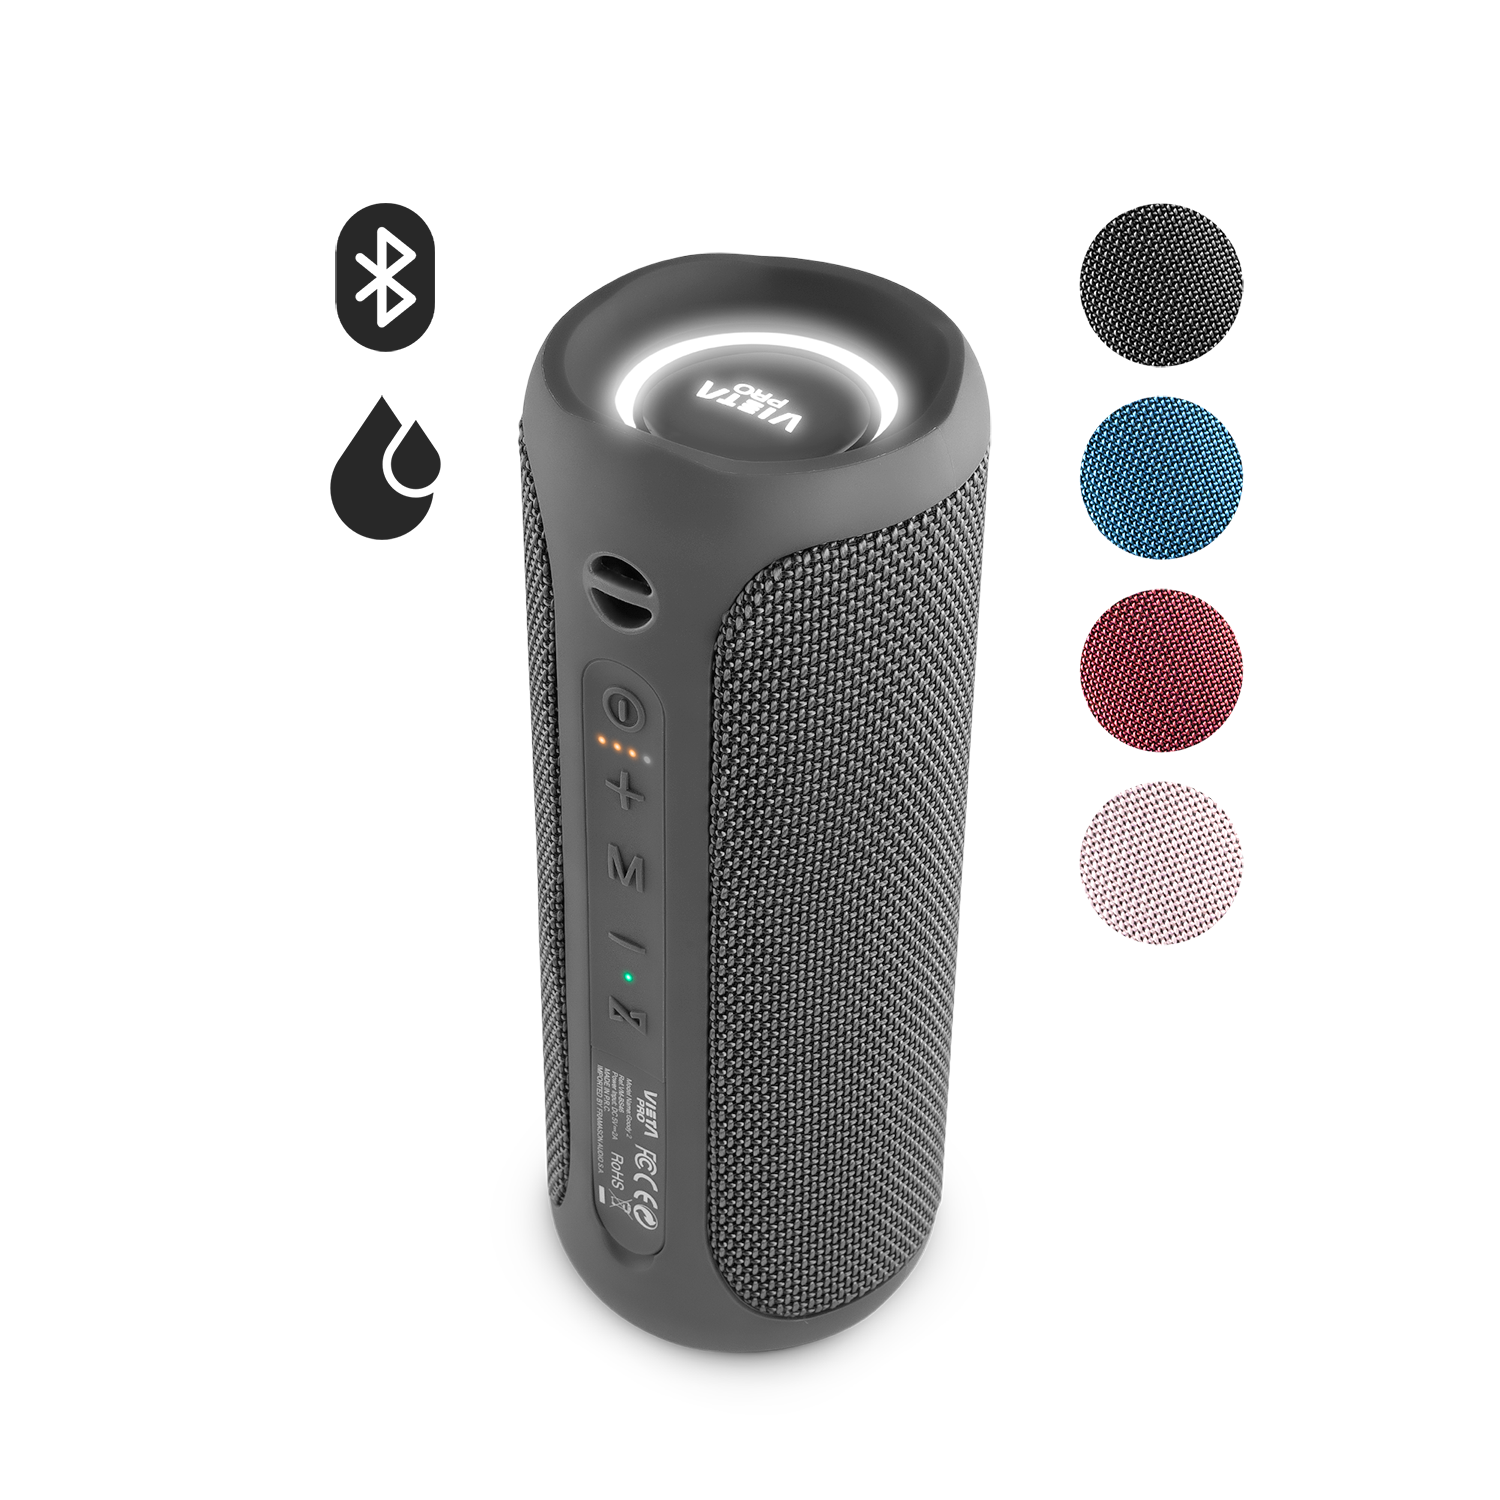 Altavoz Goody 2 de Vieta Pro, con Bluetooth 5.0, True Wireless, Micrófono,  Radio FM, 12 horas de batería, Resistencia al agua IPX7, entrada auxiliar y  botón directo al asistente virtual, color rosa. 